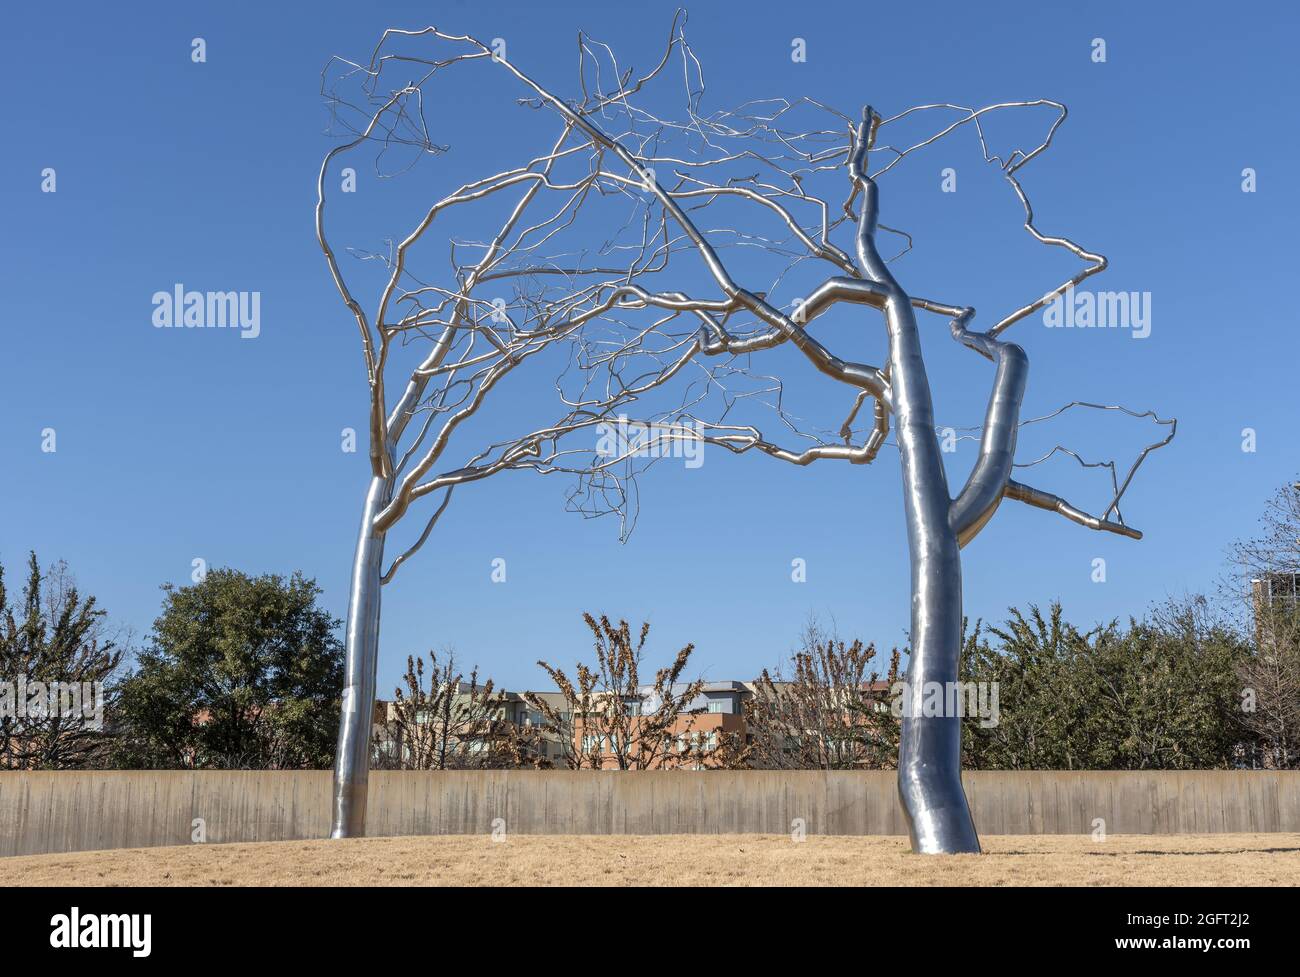 FORT WO, VEREINIGTE STAATEN - 29. Dez 2018: Fort Worth, texas, USA, Decmeber 29 2018. Roxy Paine Trees im Fort Worth Modern Art Museum. Der Edelstahl Stockfoto